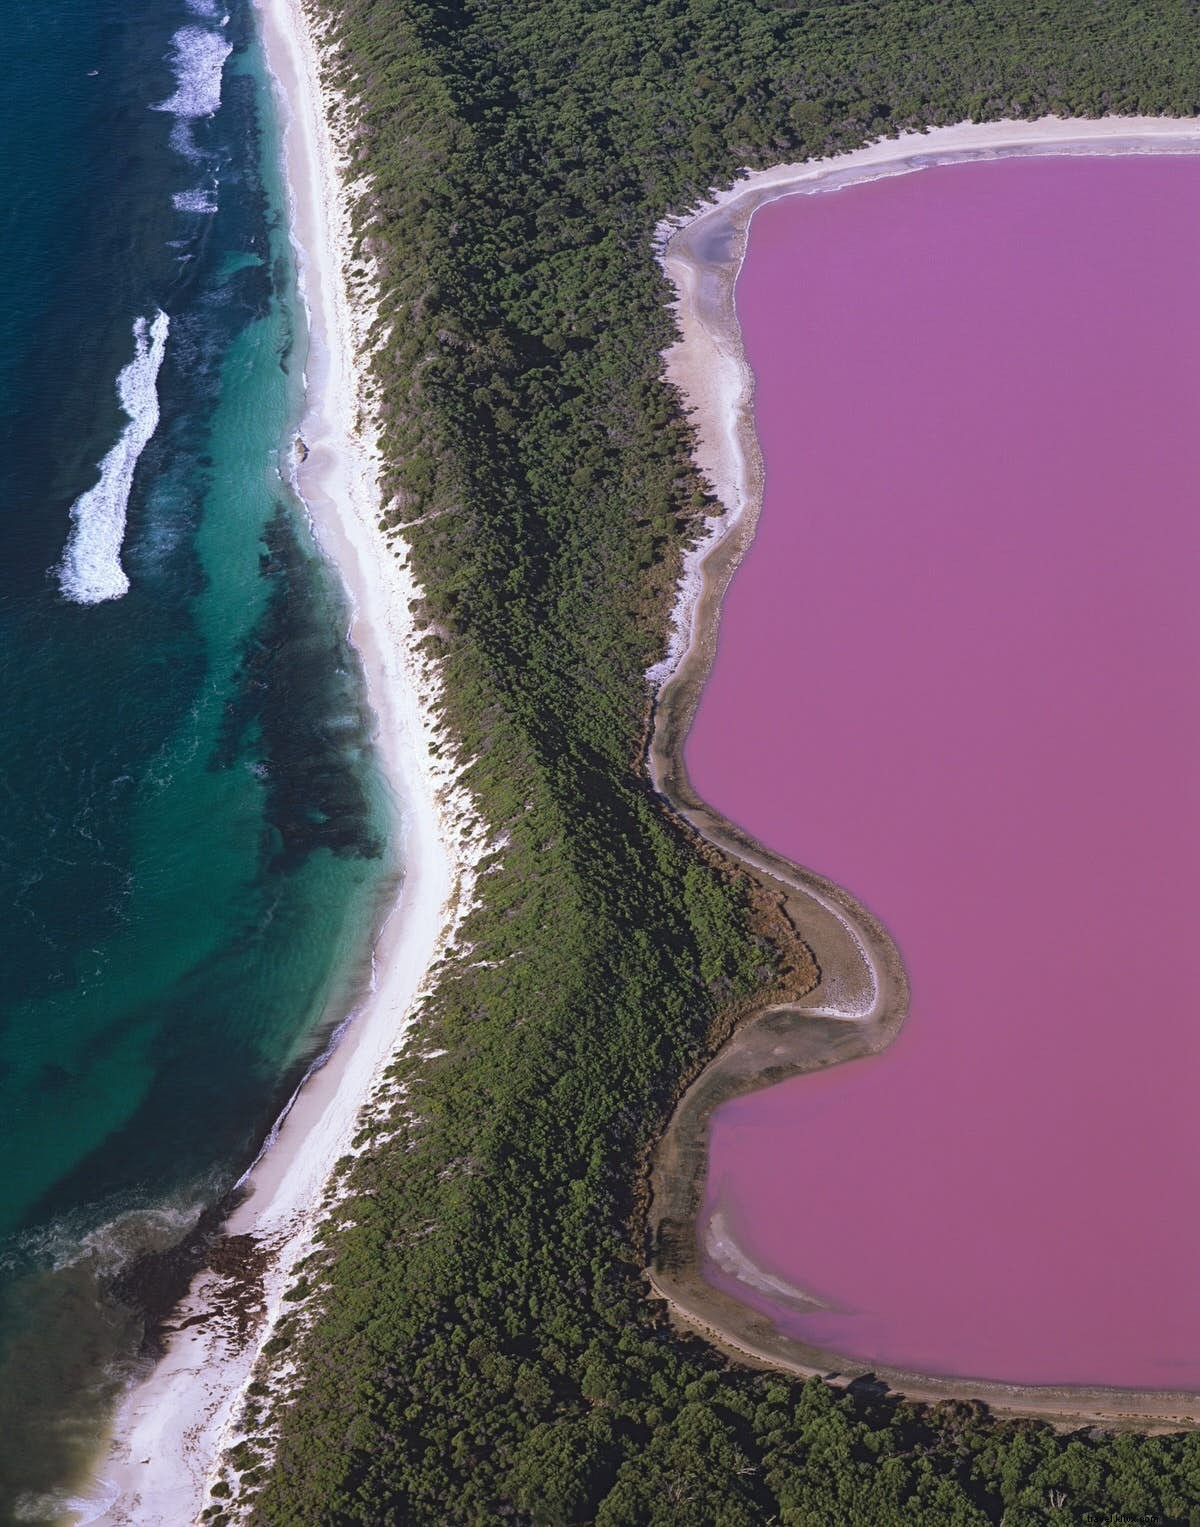 Meraviglie segrete:dalle foreste dipinte ai laghi rosa 